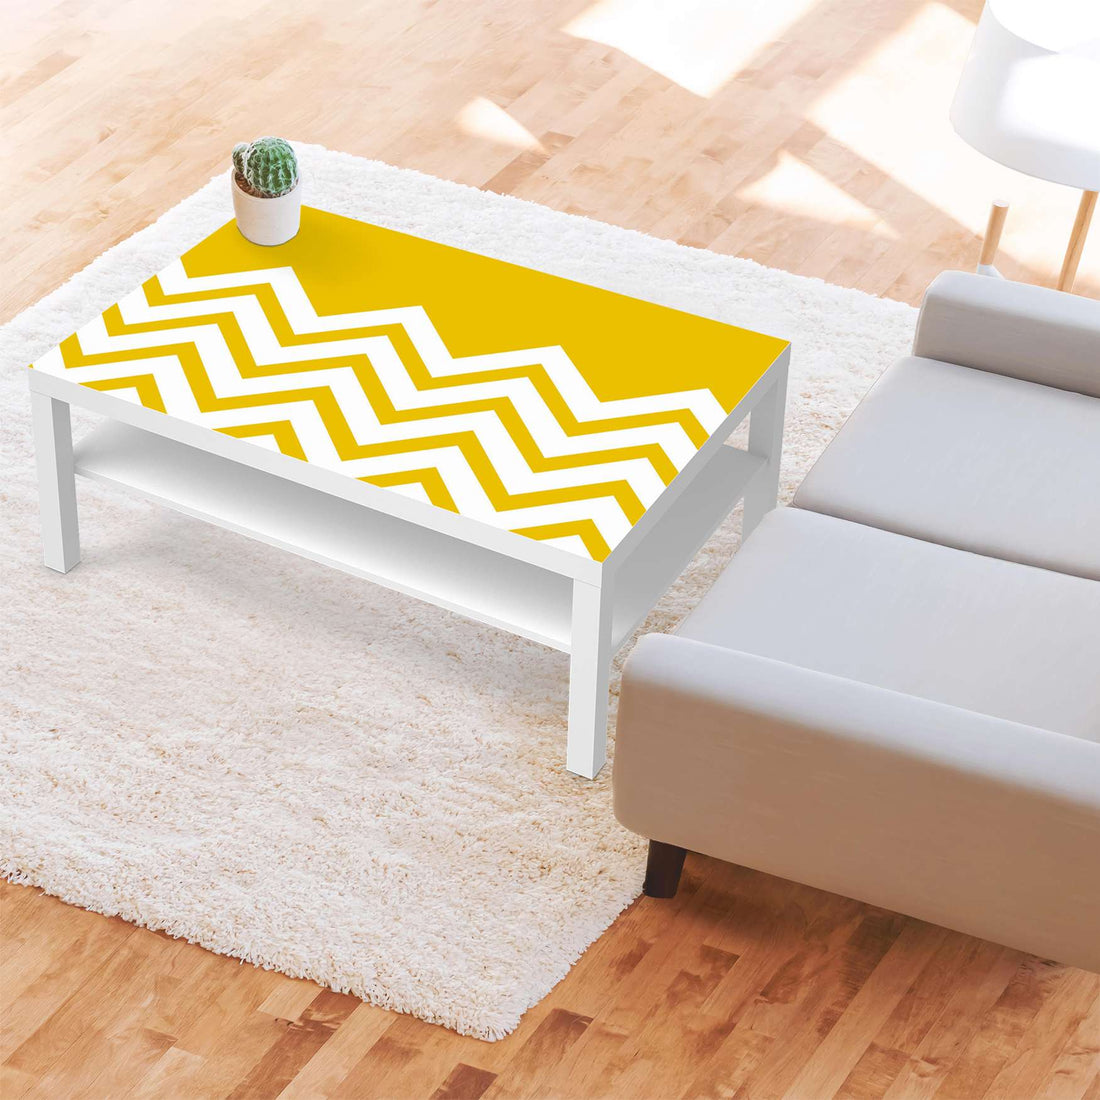 Klebefolie Gelbe Zacken - IKEA Lack Tisch 118x78 cm - Wohnzimmer